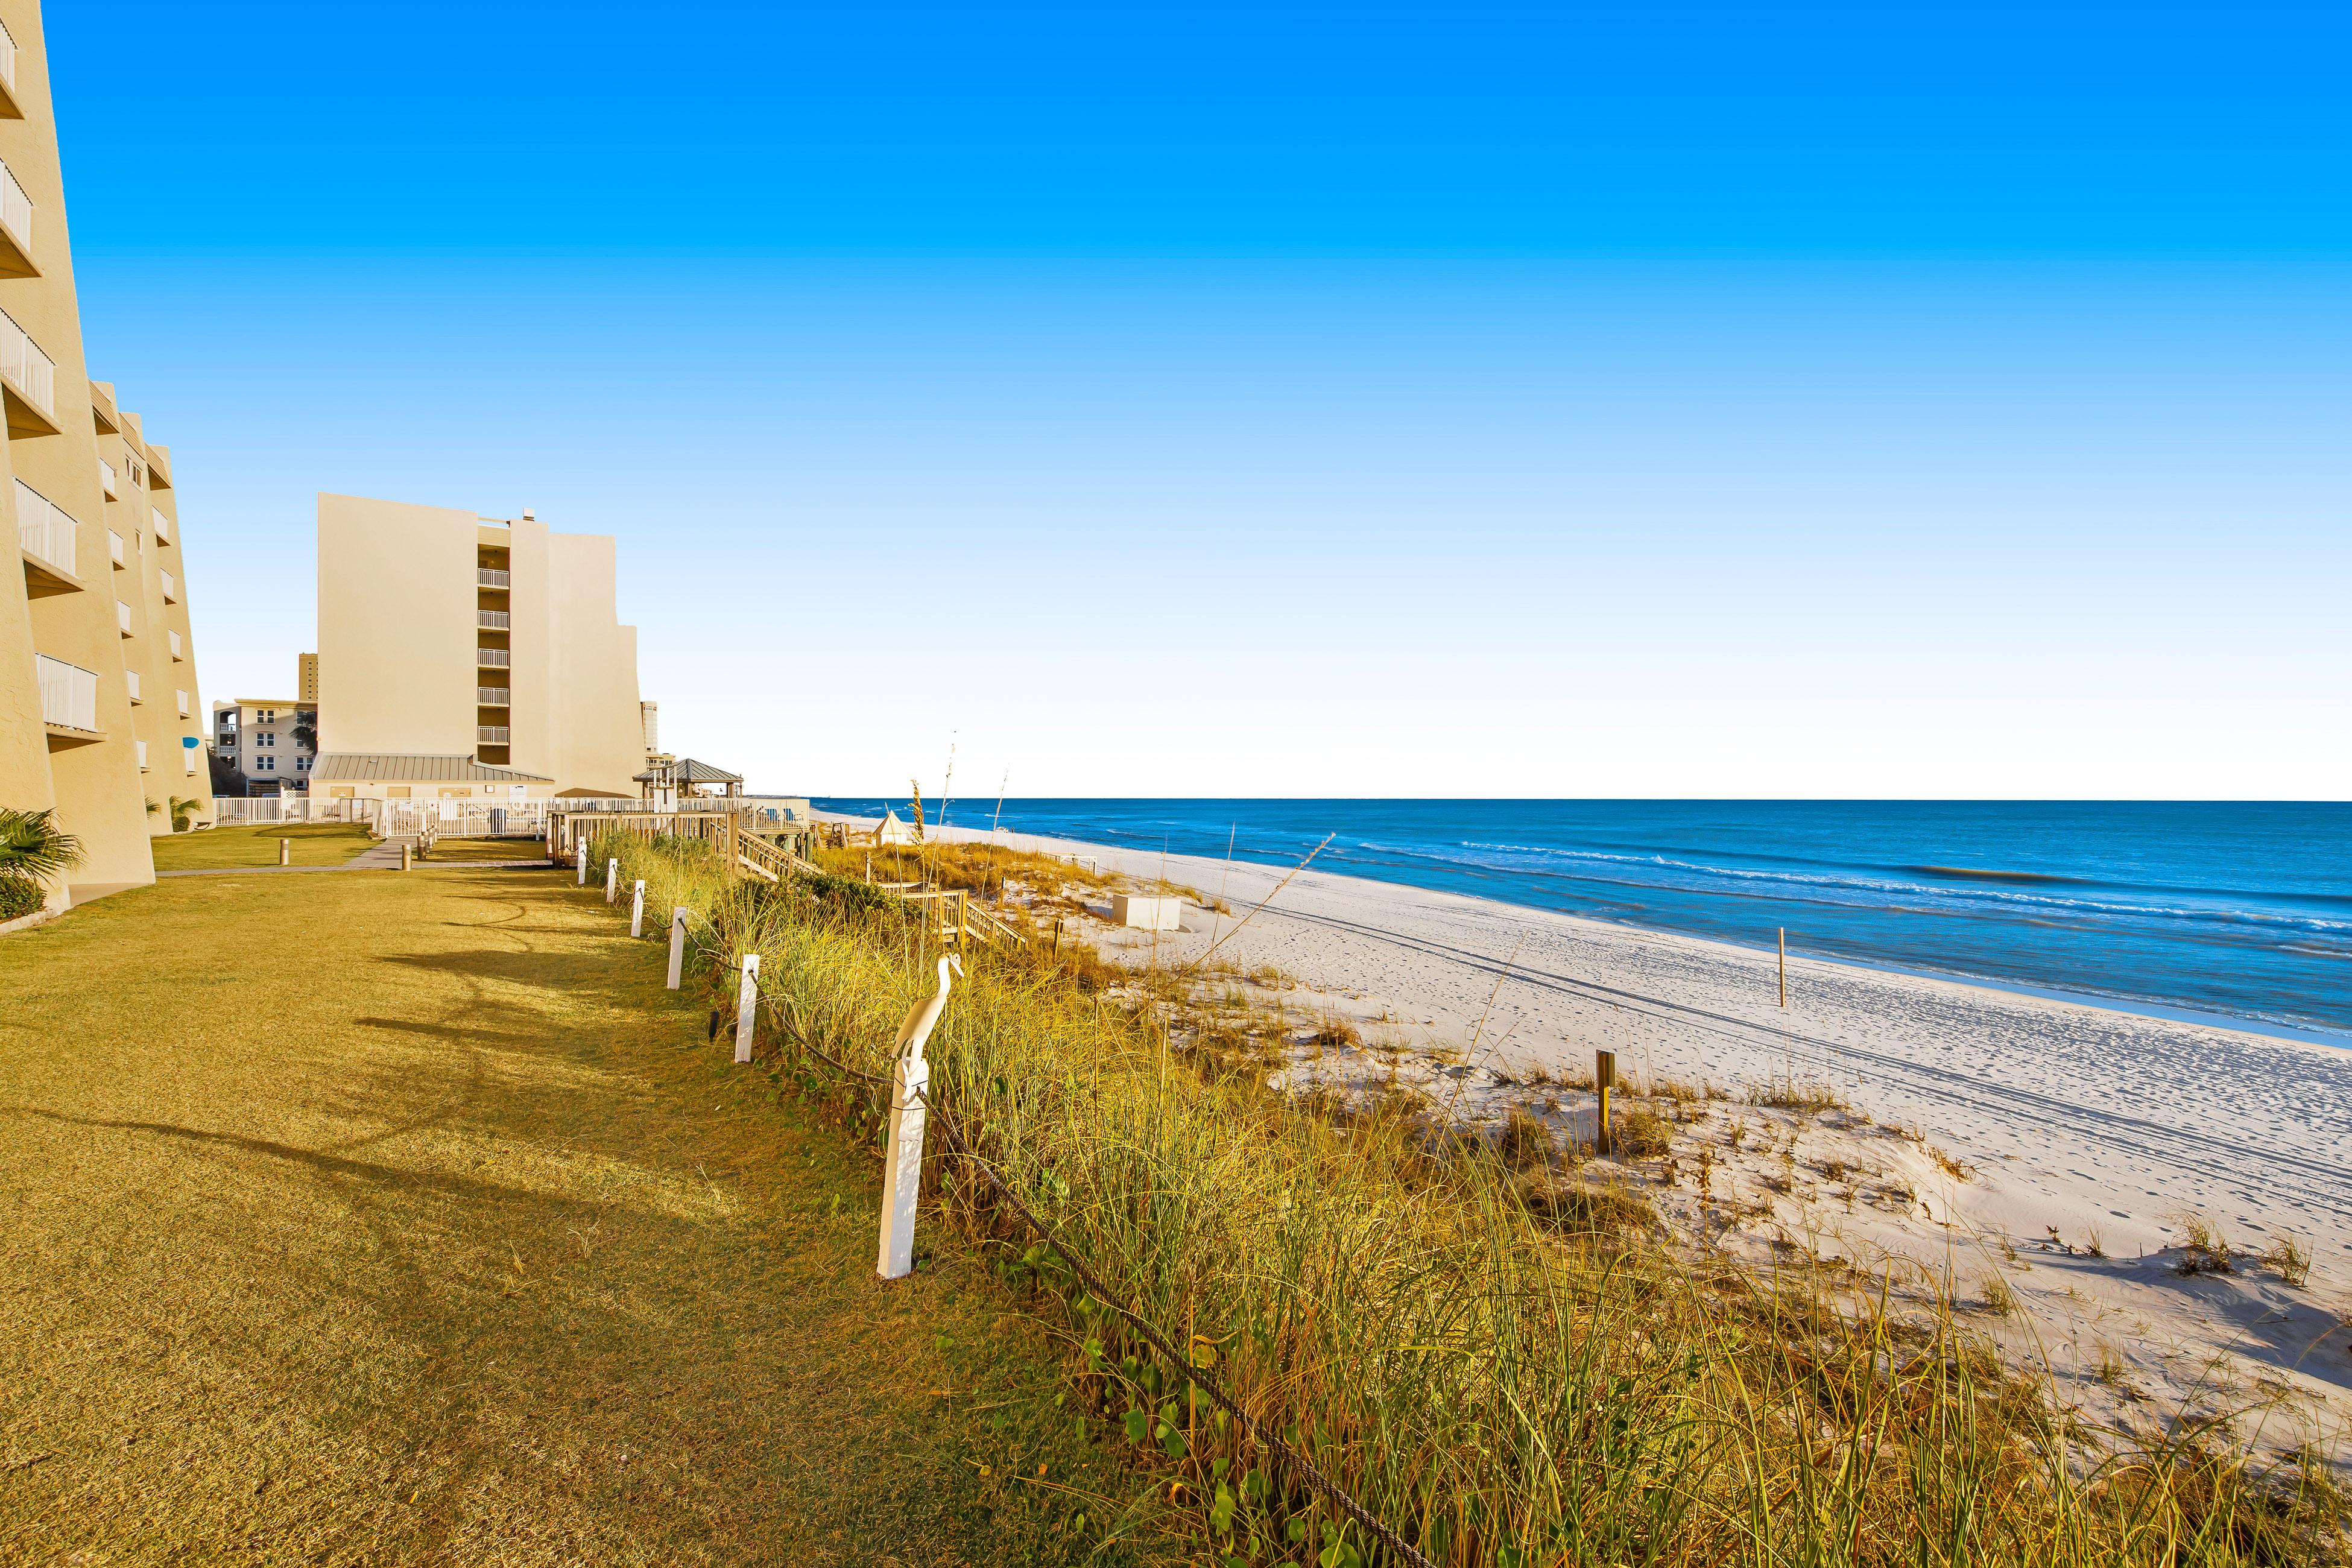 Beach House B205 Condo rental in Beach House Condos Destin in Destin Florida - #39